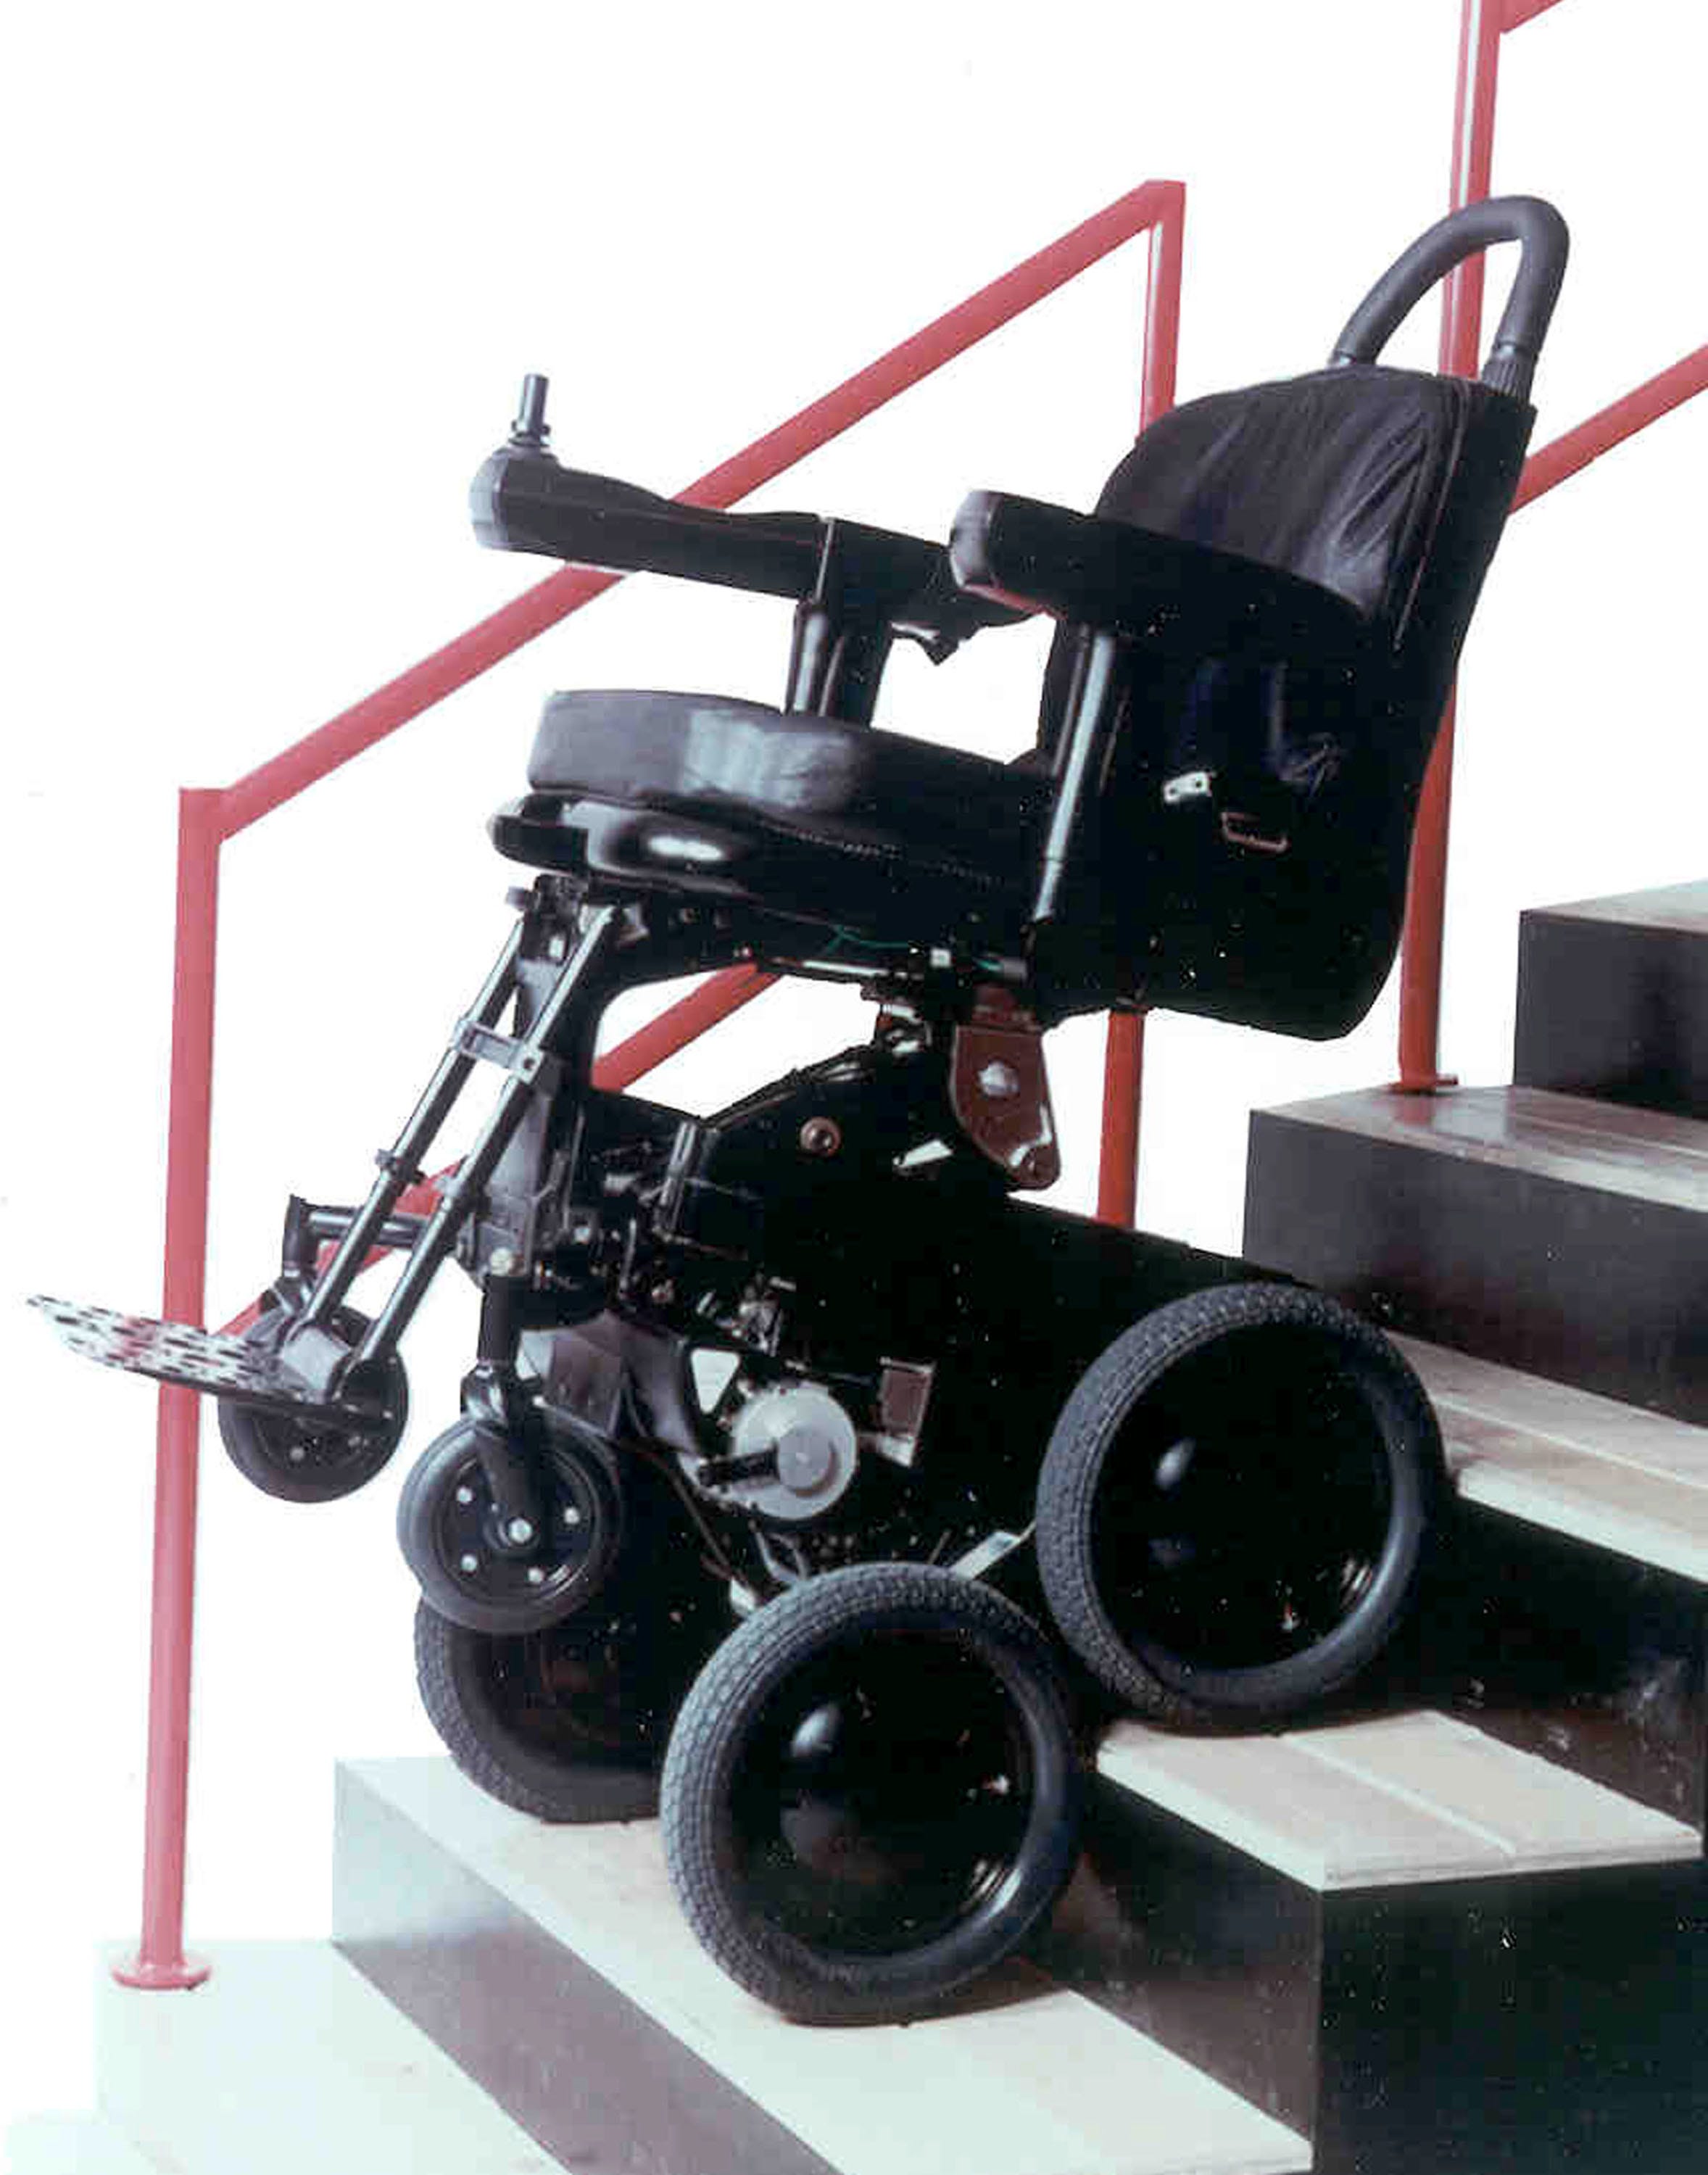 Шагающее кресло. Армед h033d инвалидная электроколяска. Инвалидная коляска для подъема по лестнице. Кресло-коляска для инвалидов для подъема по лестнице. Электроколяска для инвалидов шагающая по лестнице.